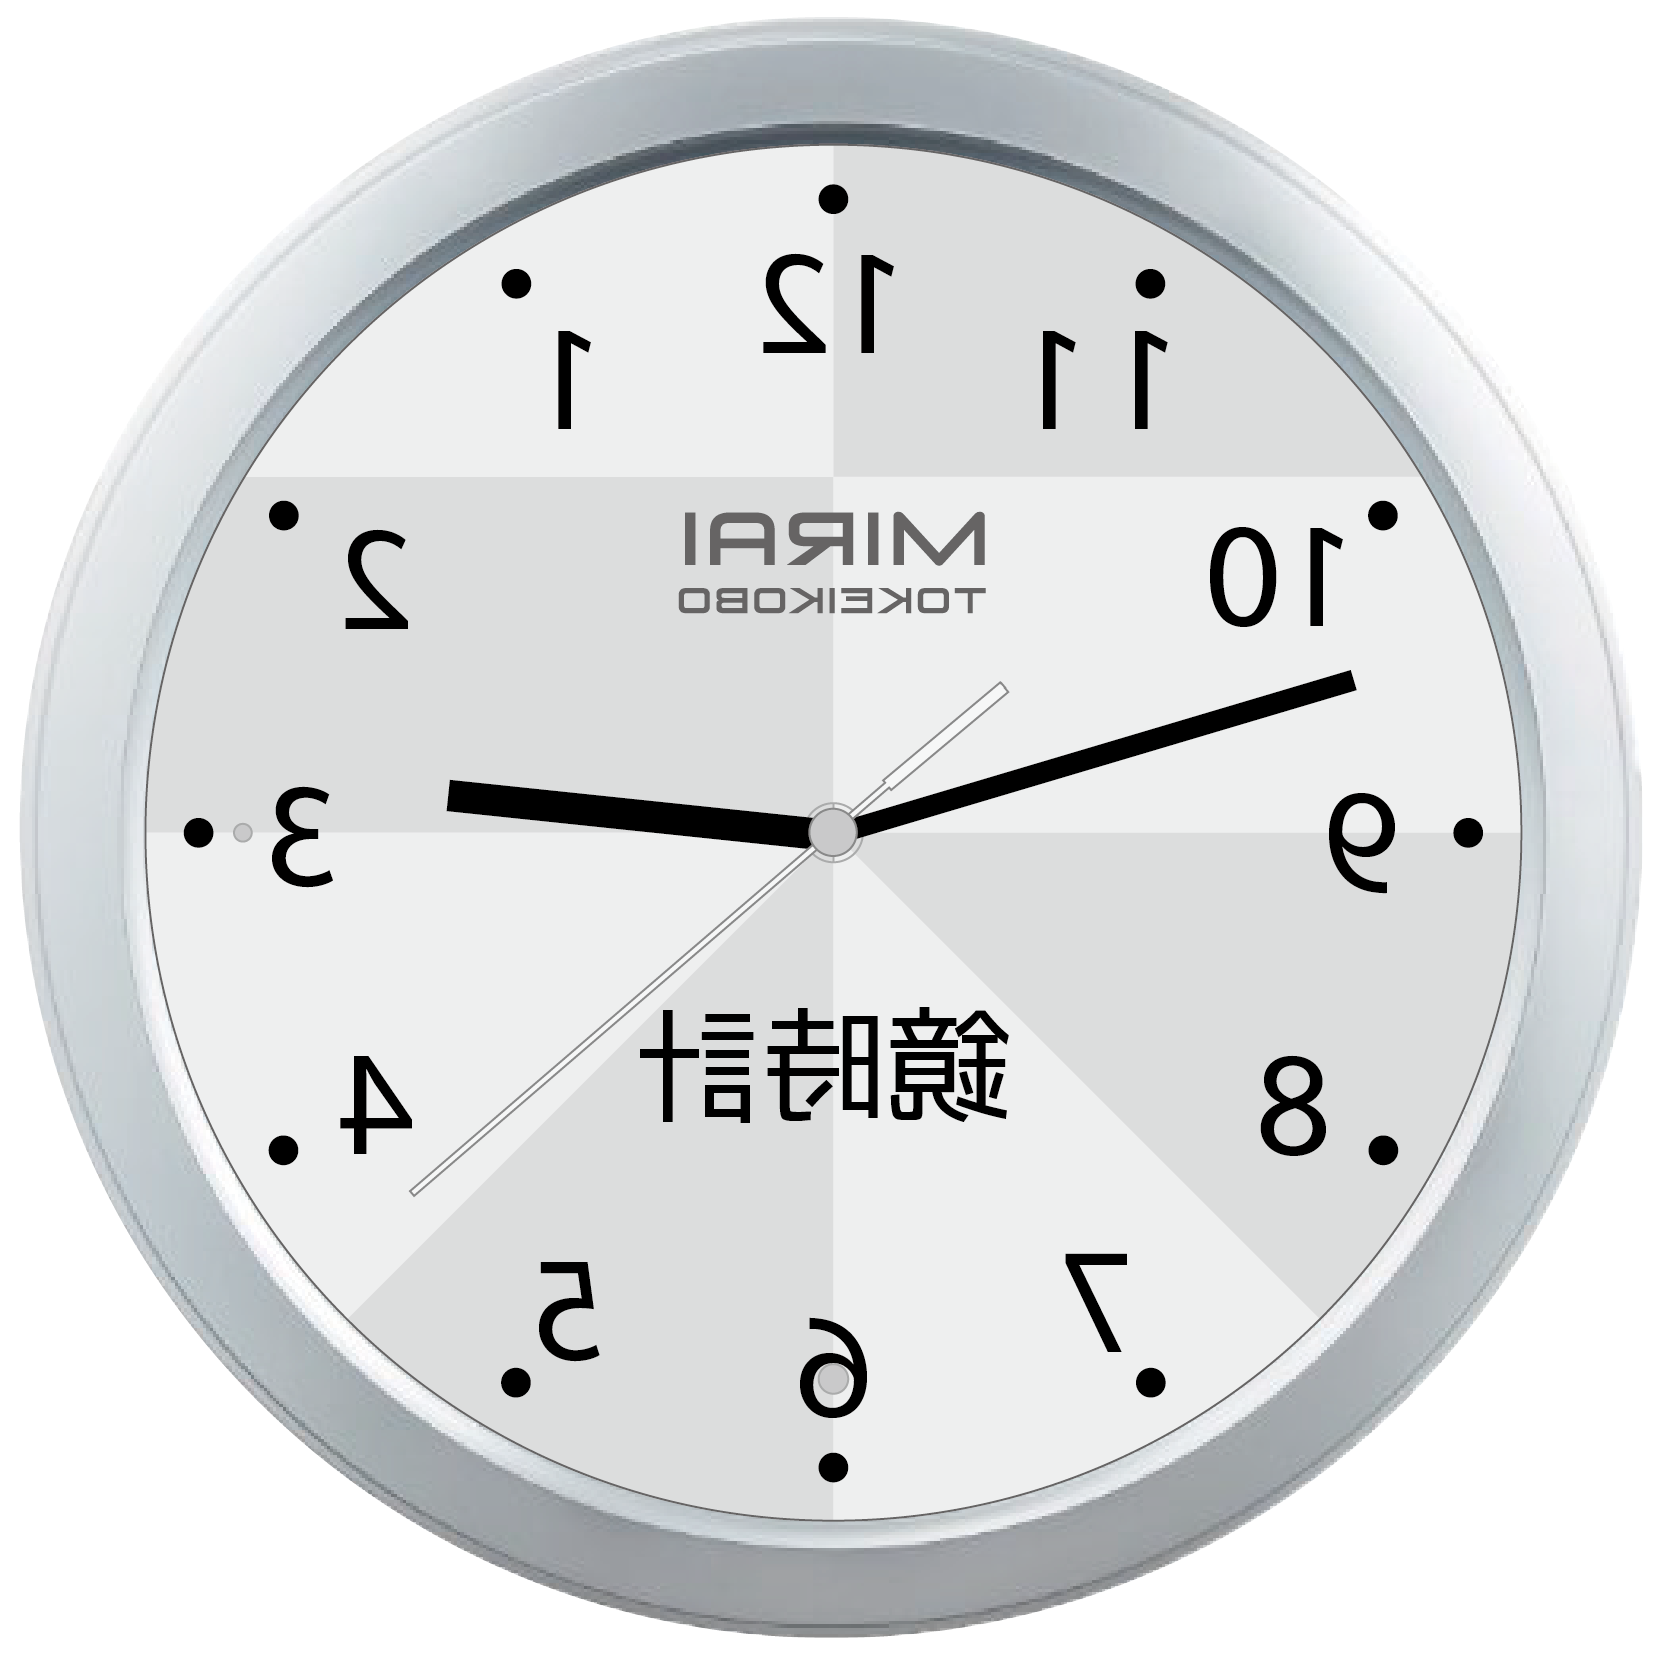 逆回転時計をご購入される際には 鏡時計 と 脳トレ時計 の違いにご注意くだだい 逆回転時計のお店 時を楽しむ 未来時計工房